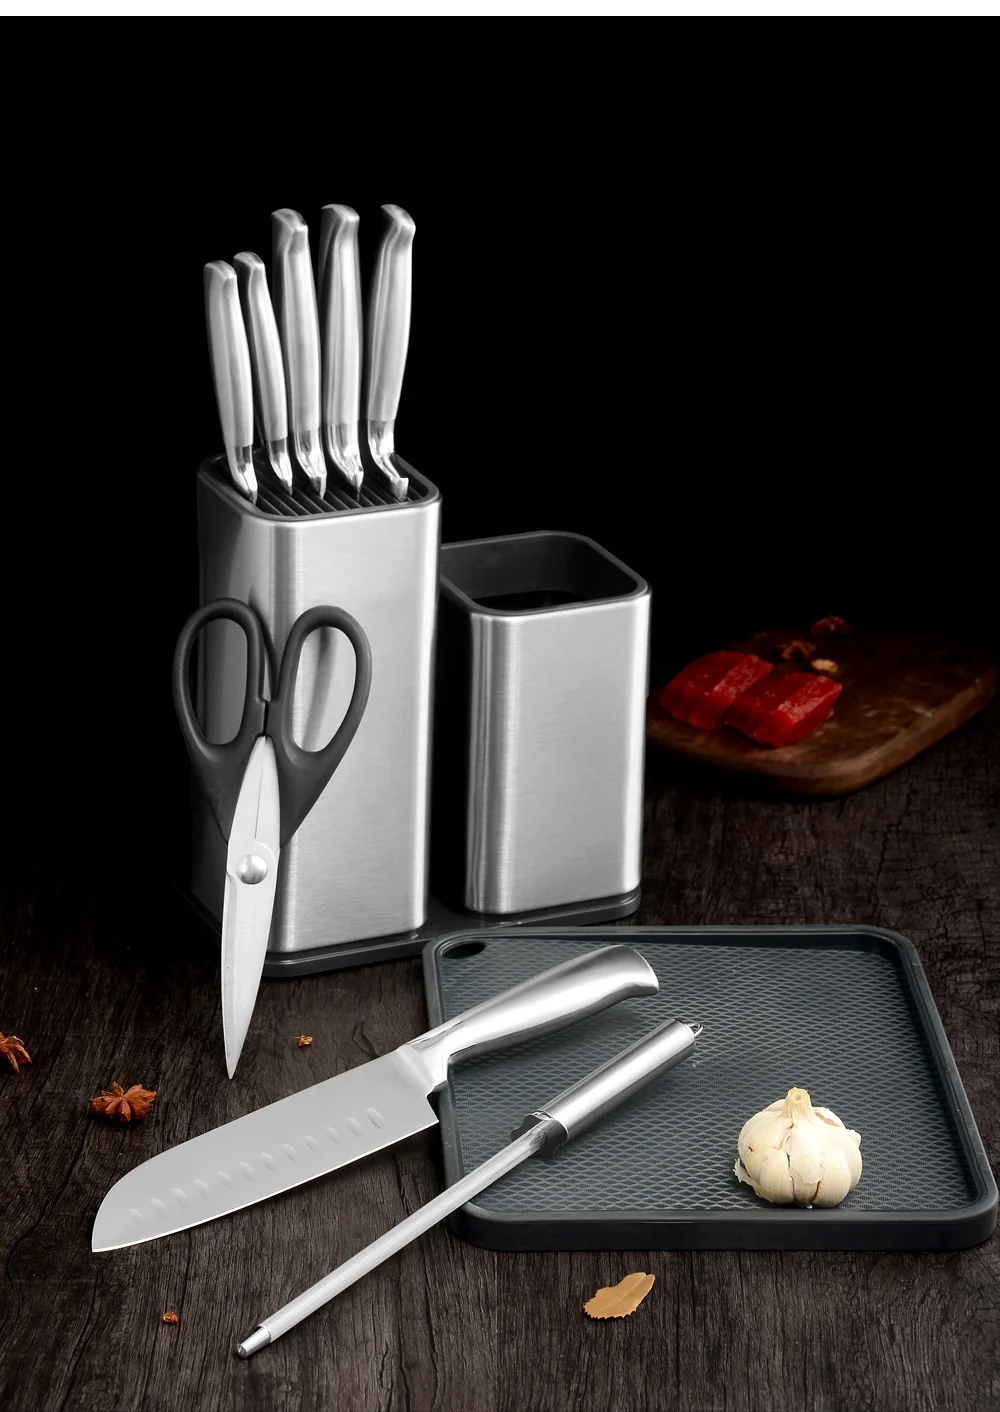 XYj Новинка 304, держатель для ножей из нержавеющей стали, многофункциональная стойка для ножей, металлический блок для ножей, кухонный инструмент для повара